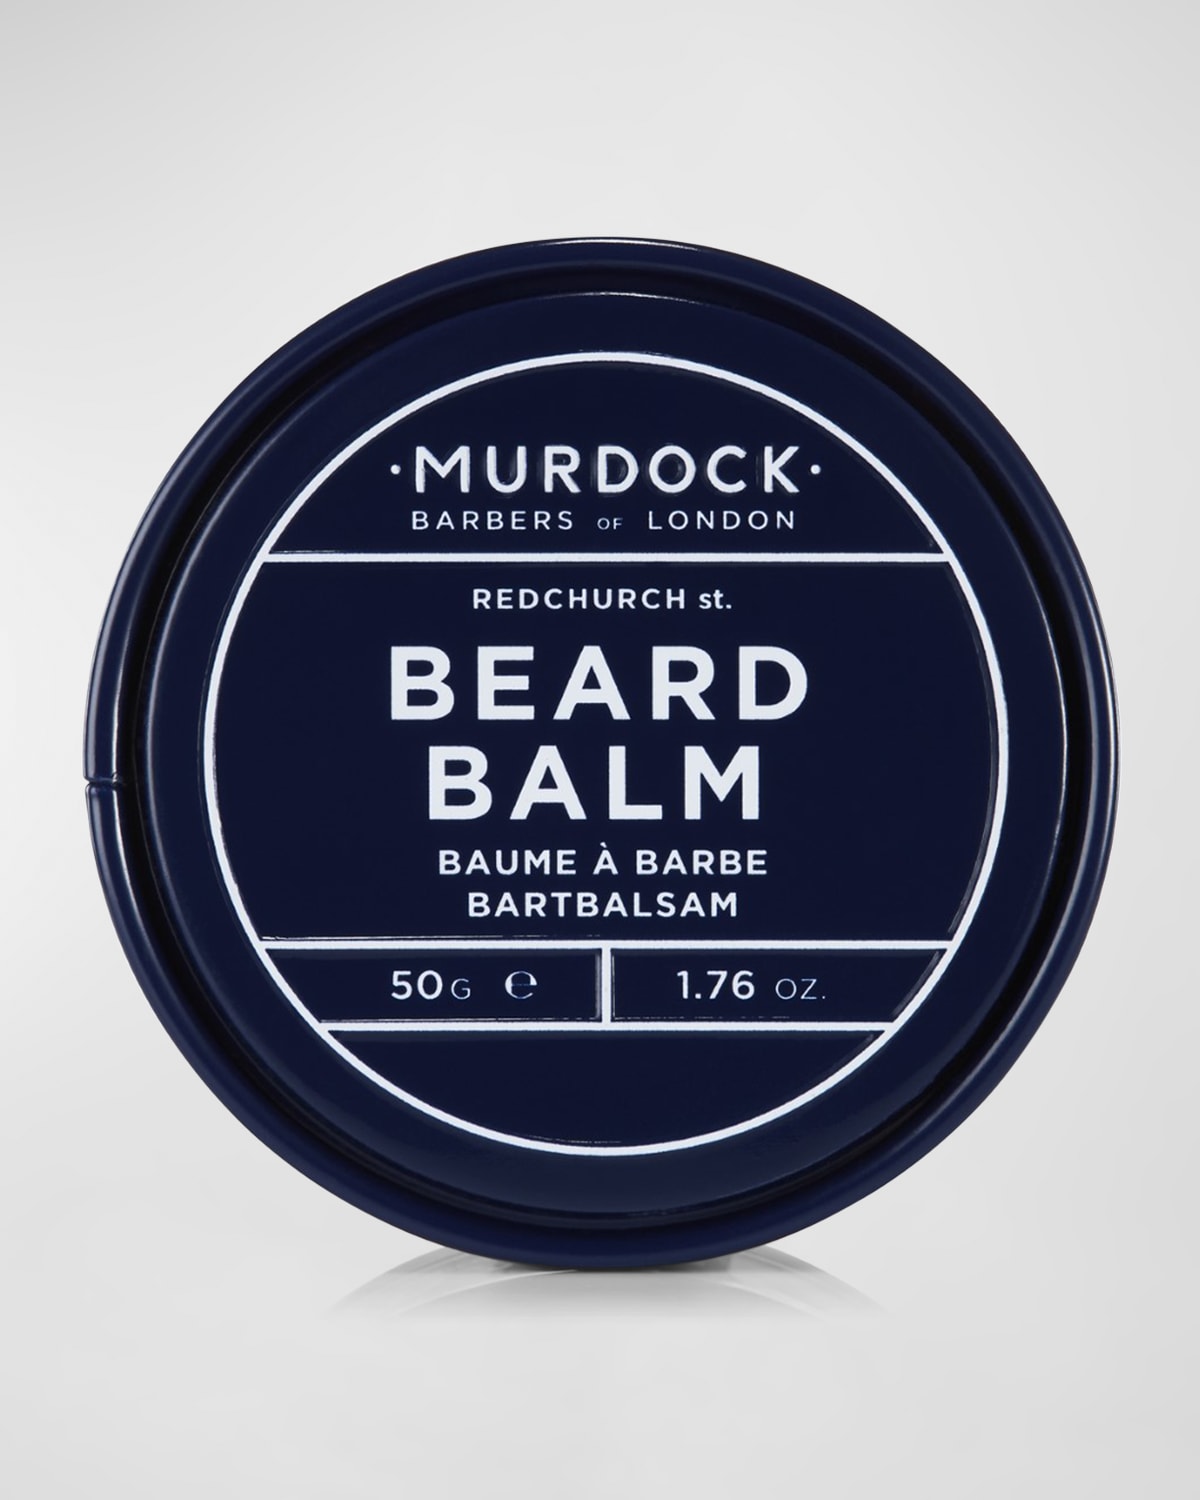 Murdock London Beard Balm, 1.76 Oz.